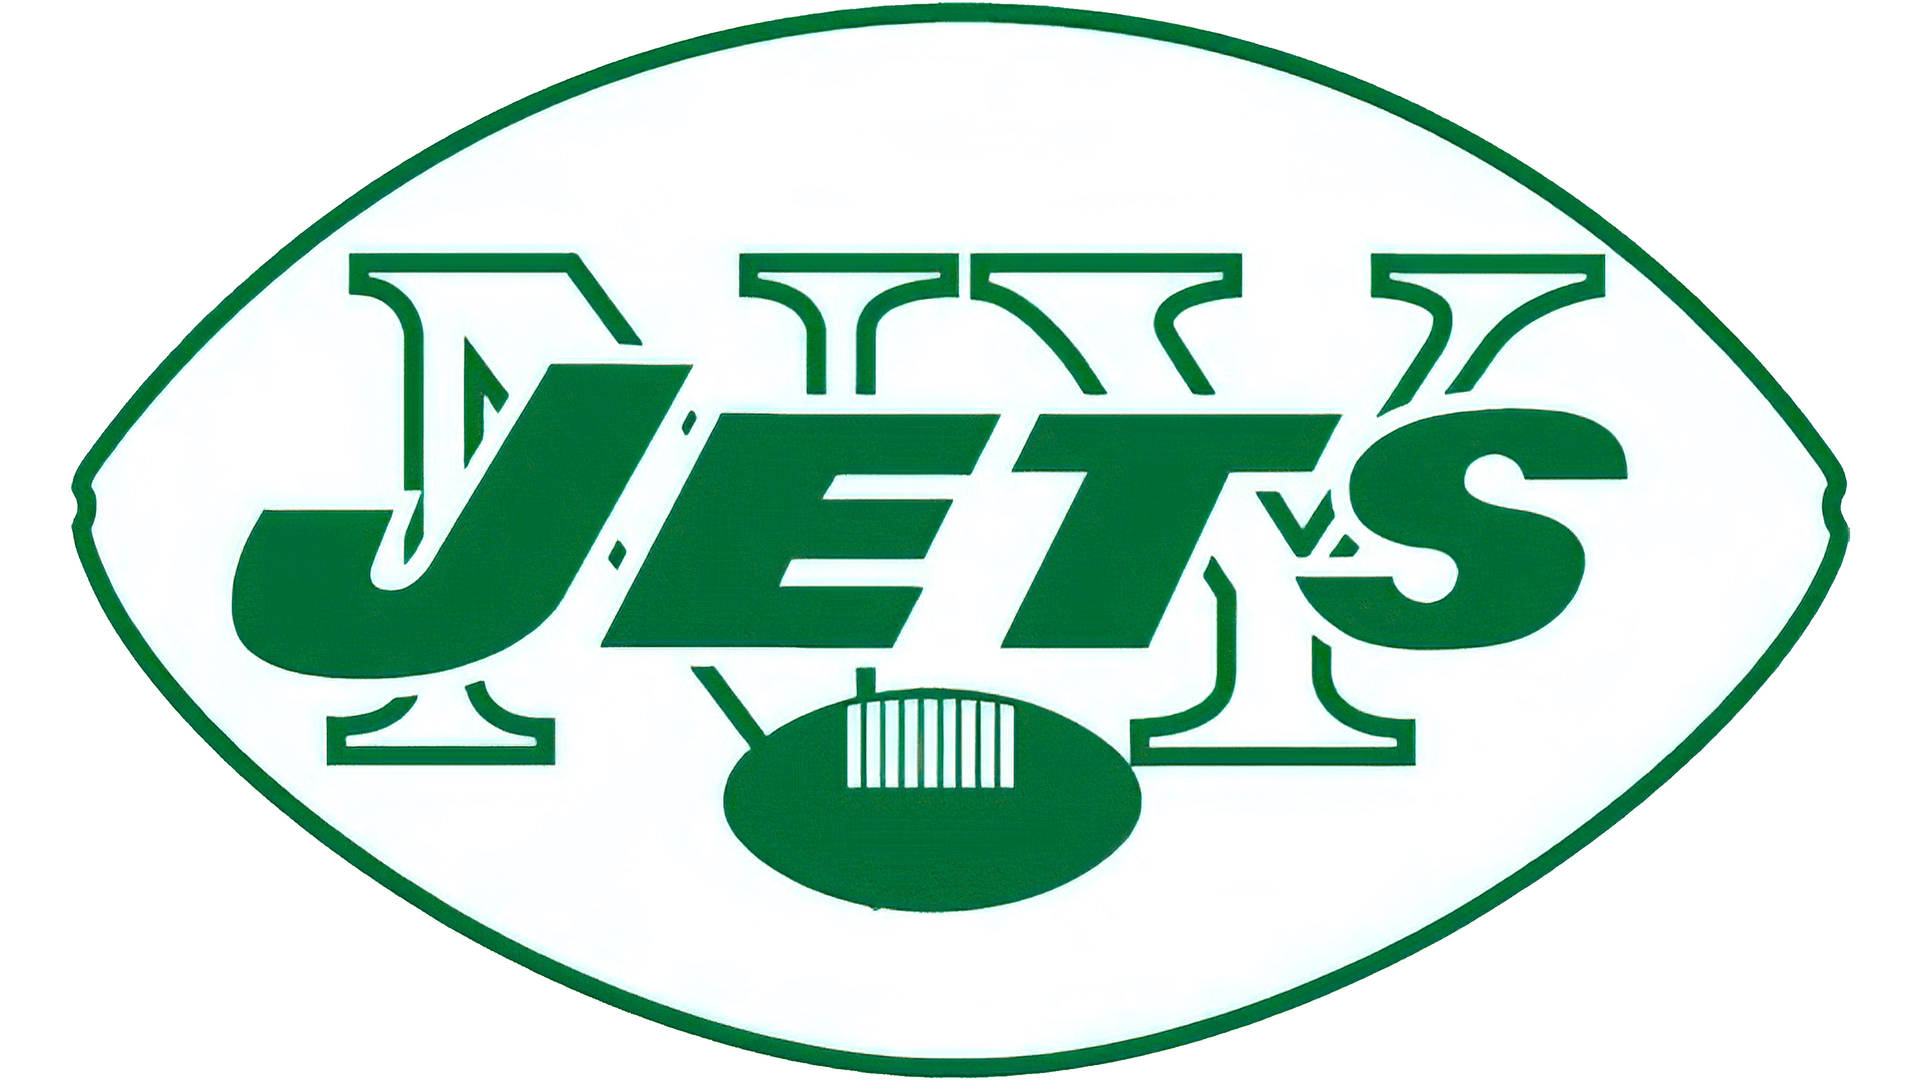 Esquemaen Verde De Los Ny Jets. Fondo de pantalla